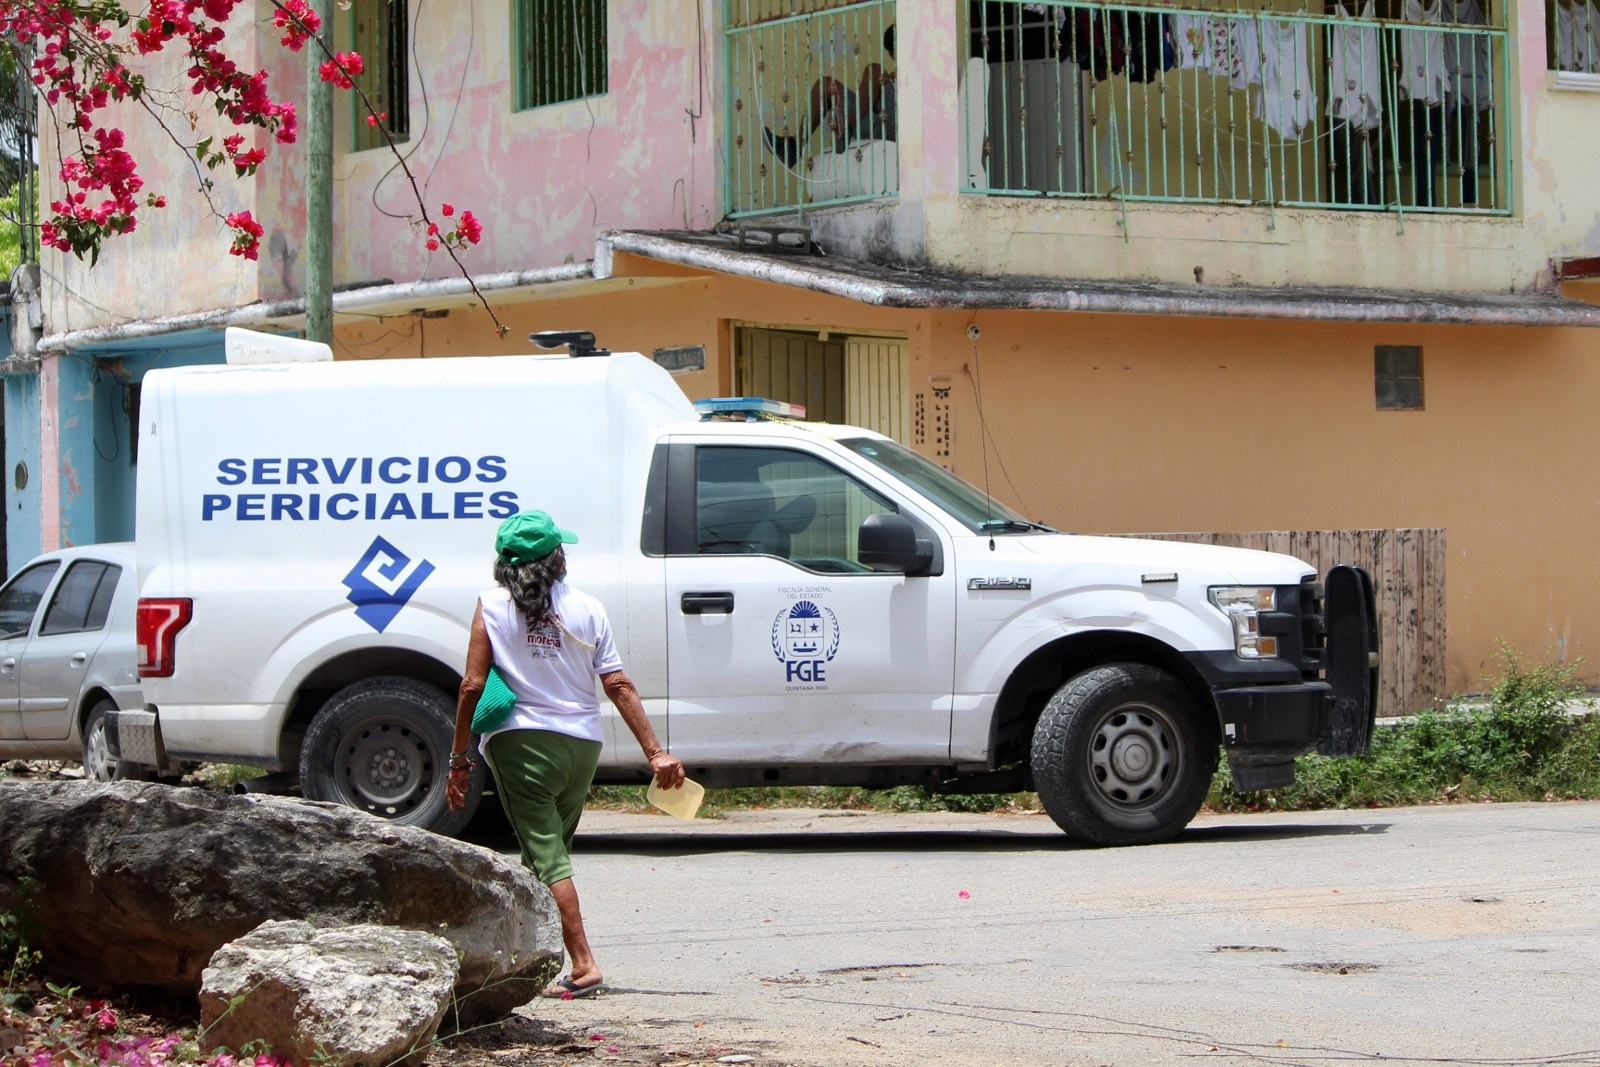 La SSP Quintana Roo dio medidas para controlar la inseguridad casi a finales de mayo, que hasta el momento no han dado resultados